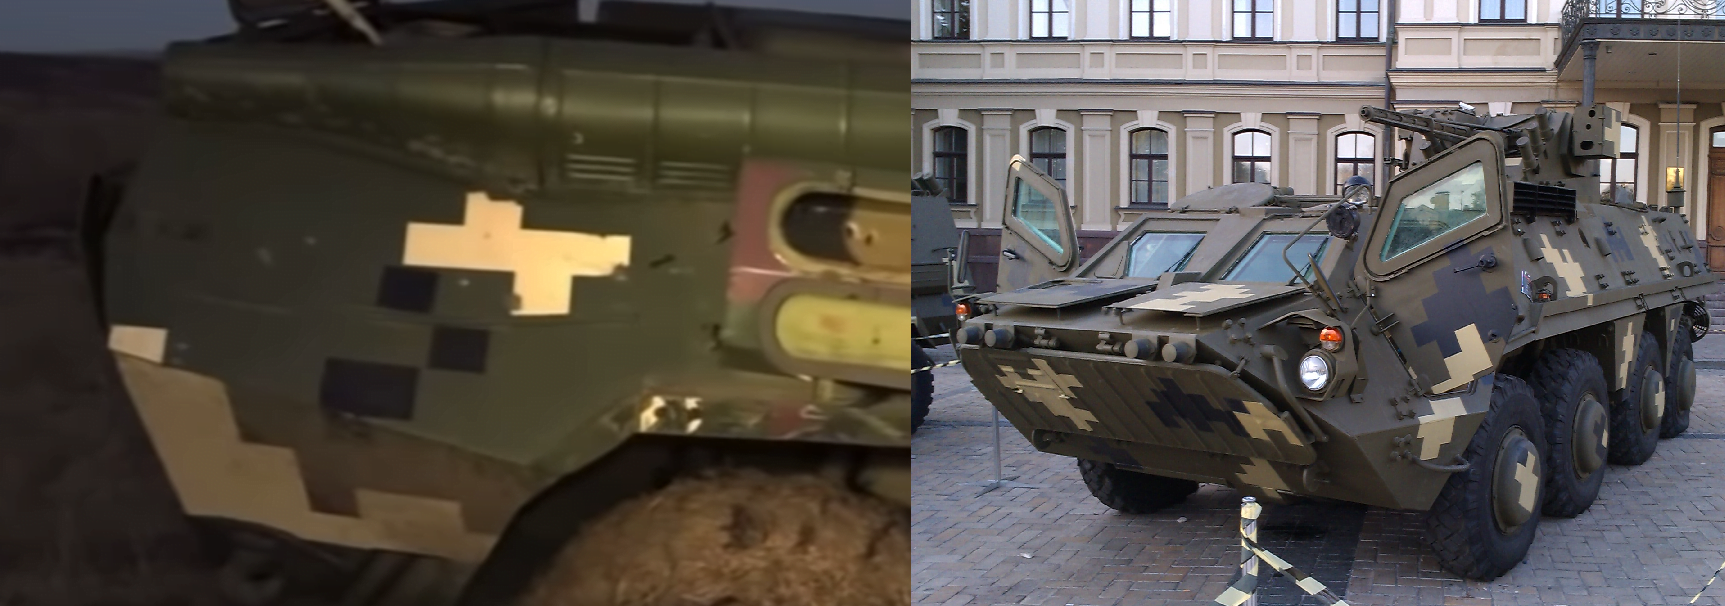 Pomalowany BTR-70M